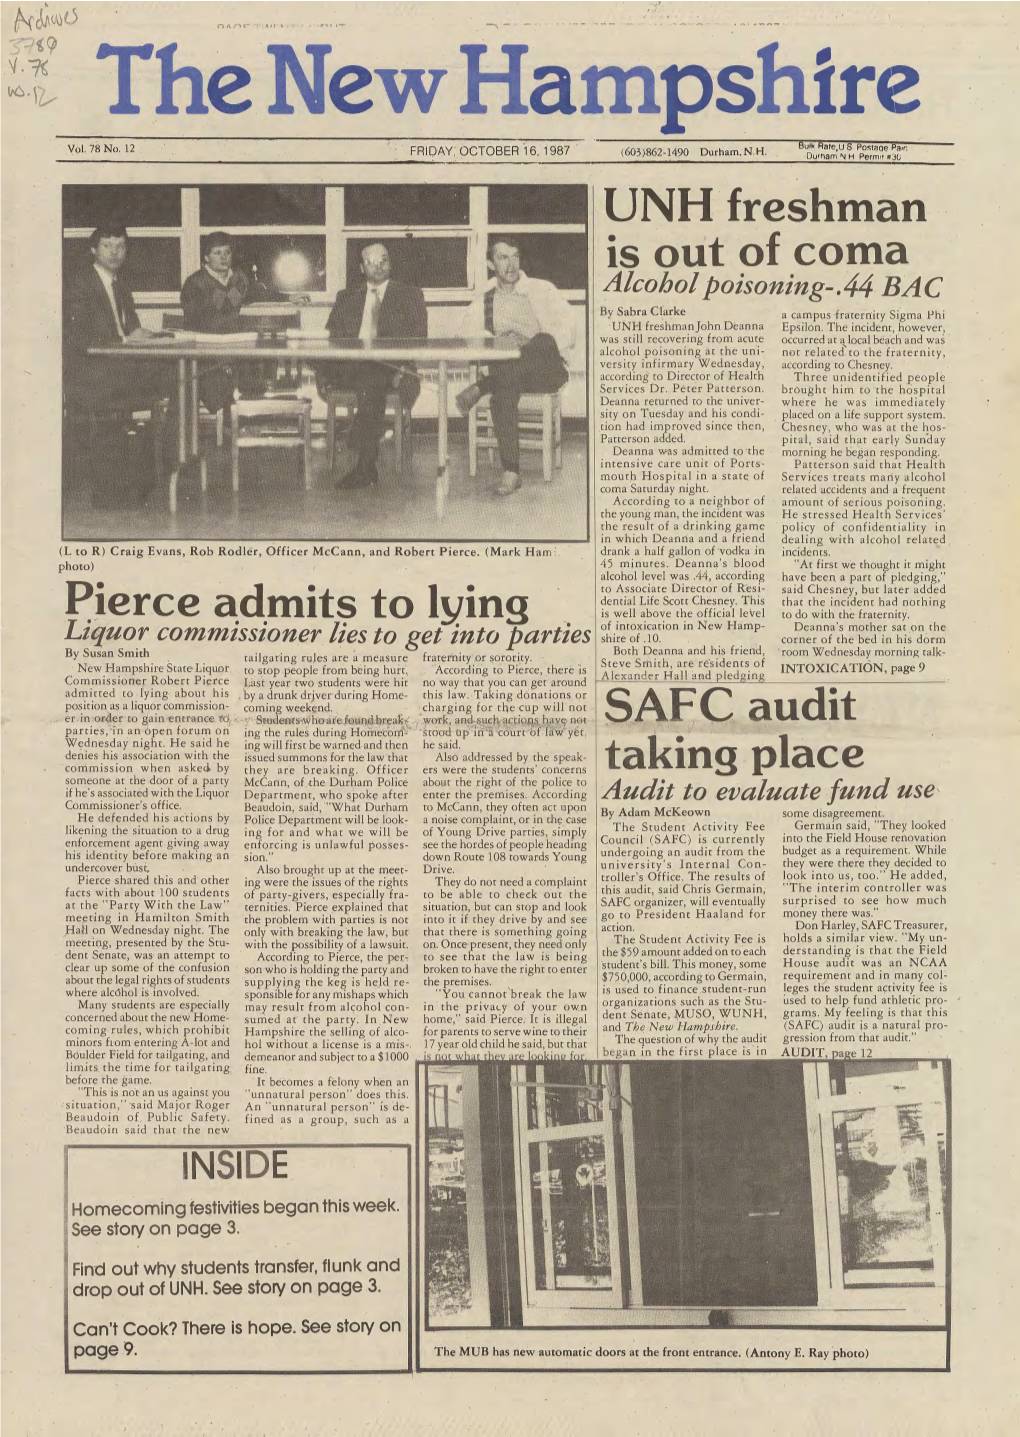 The New Hampshire, Vol. 78, No. 12 (Oct. 16, 1987)